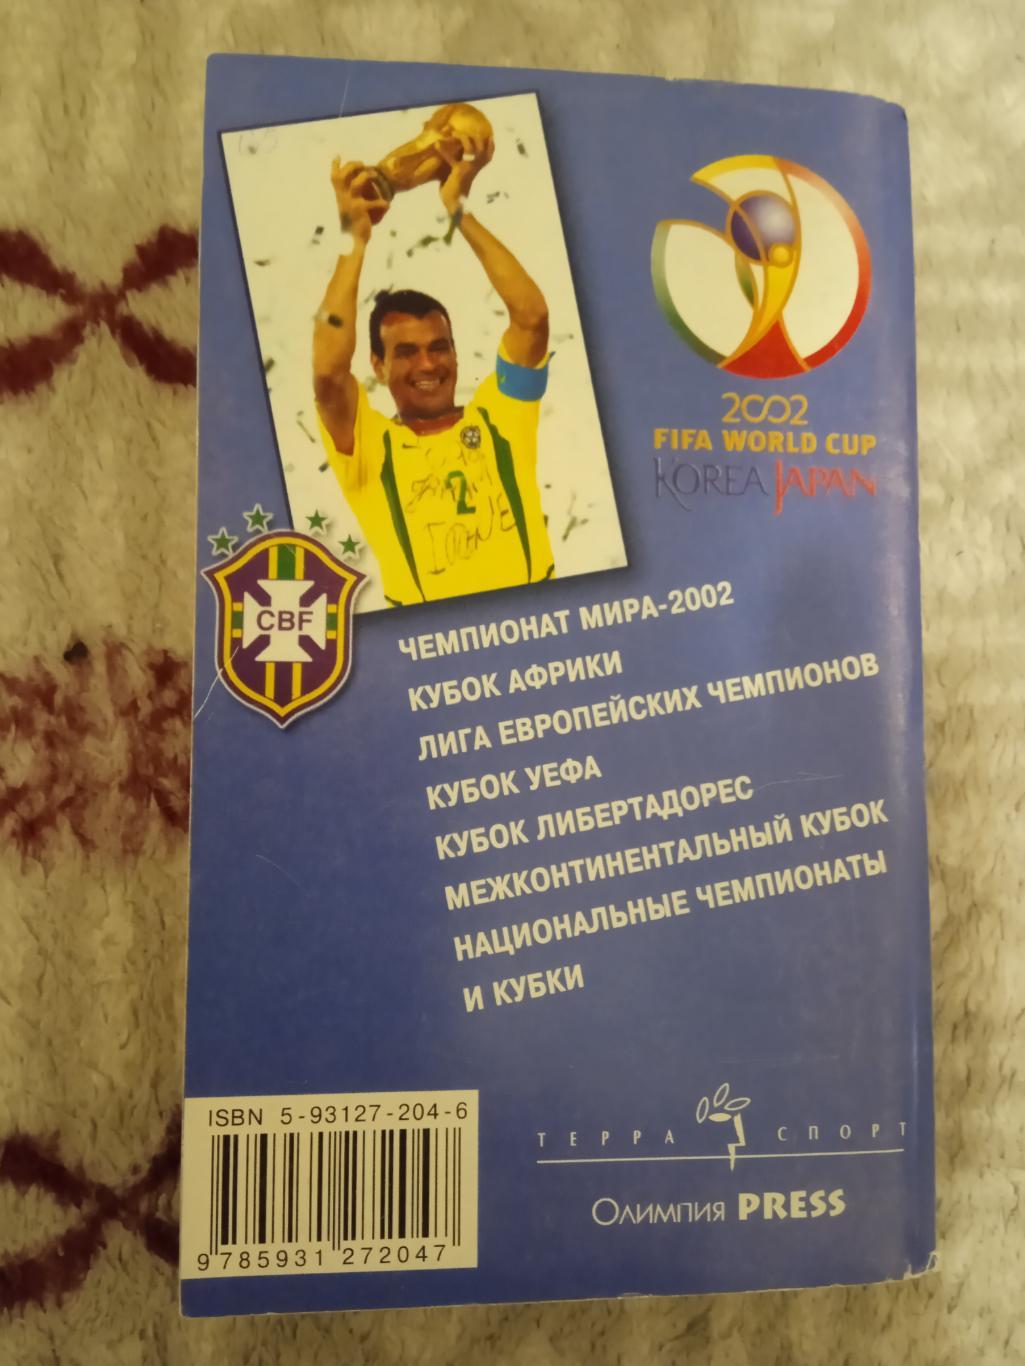 И.Гольдес.Мировой футбол 2002-2003.Москва.Терра-Спорт 2002 г. 1